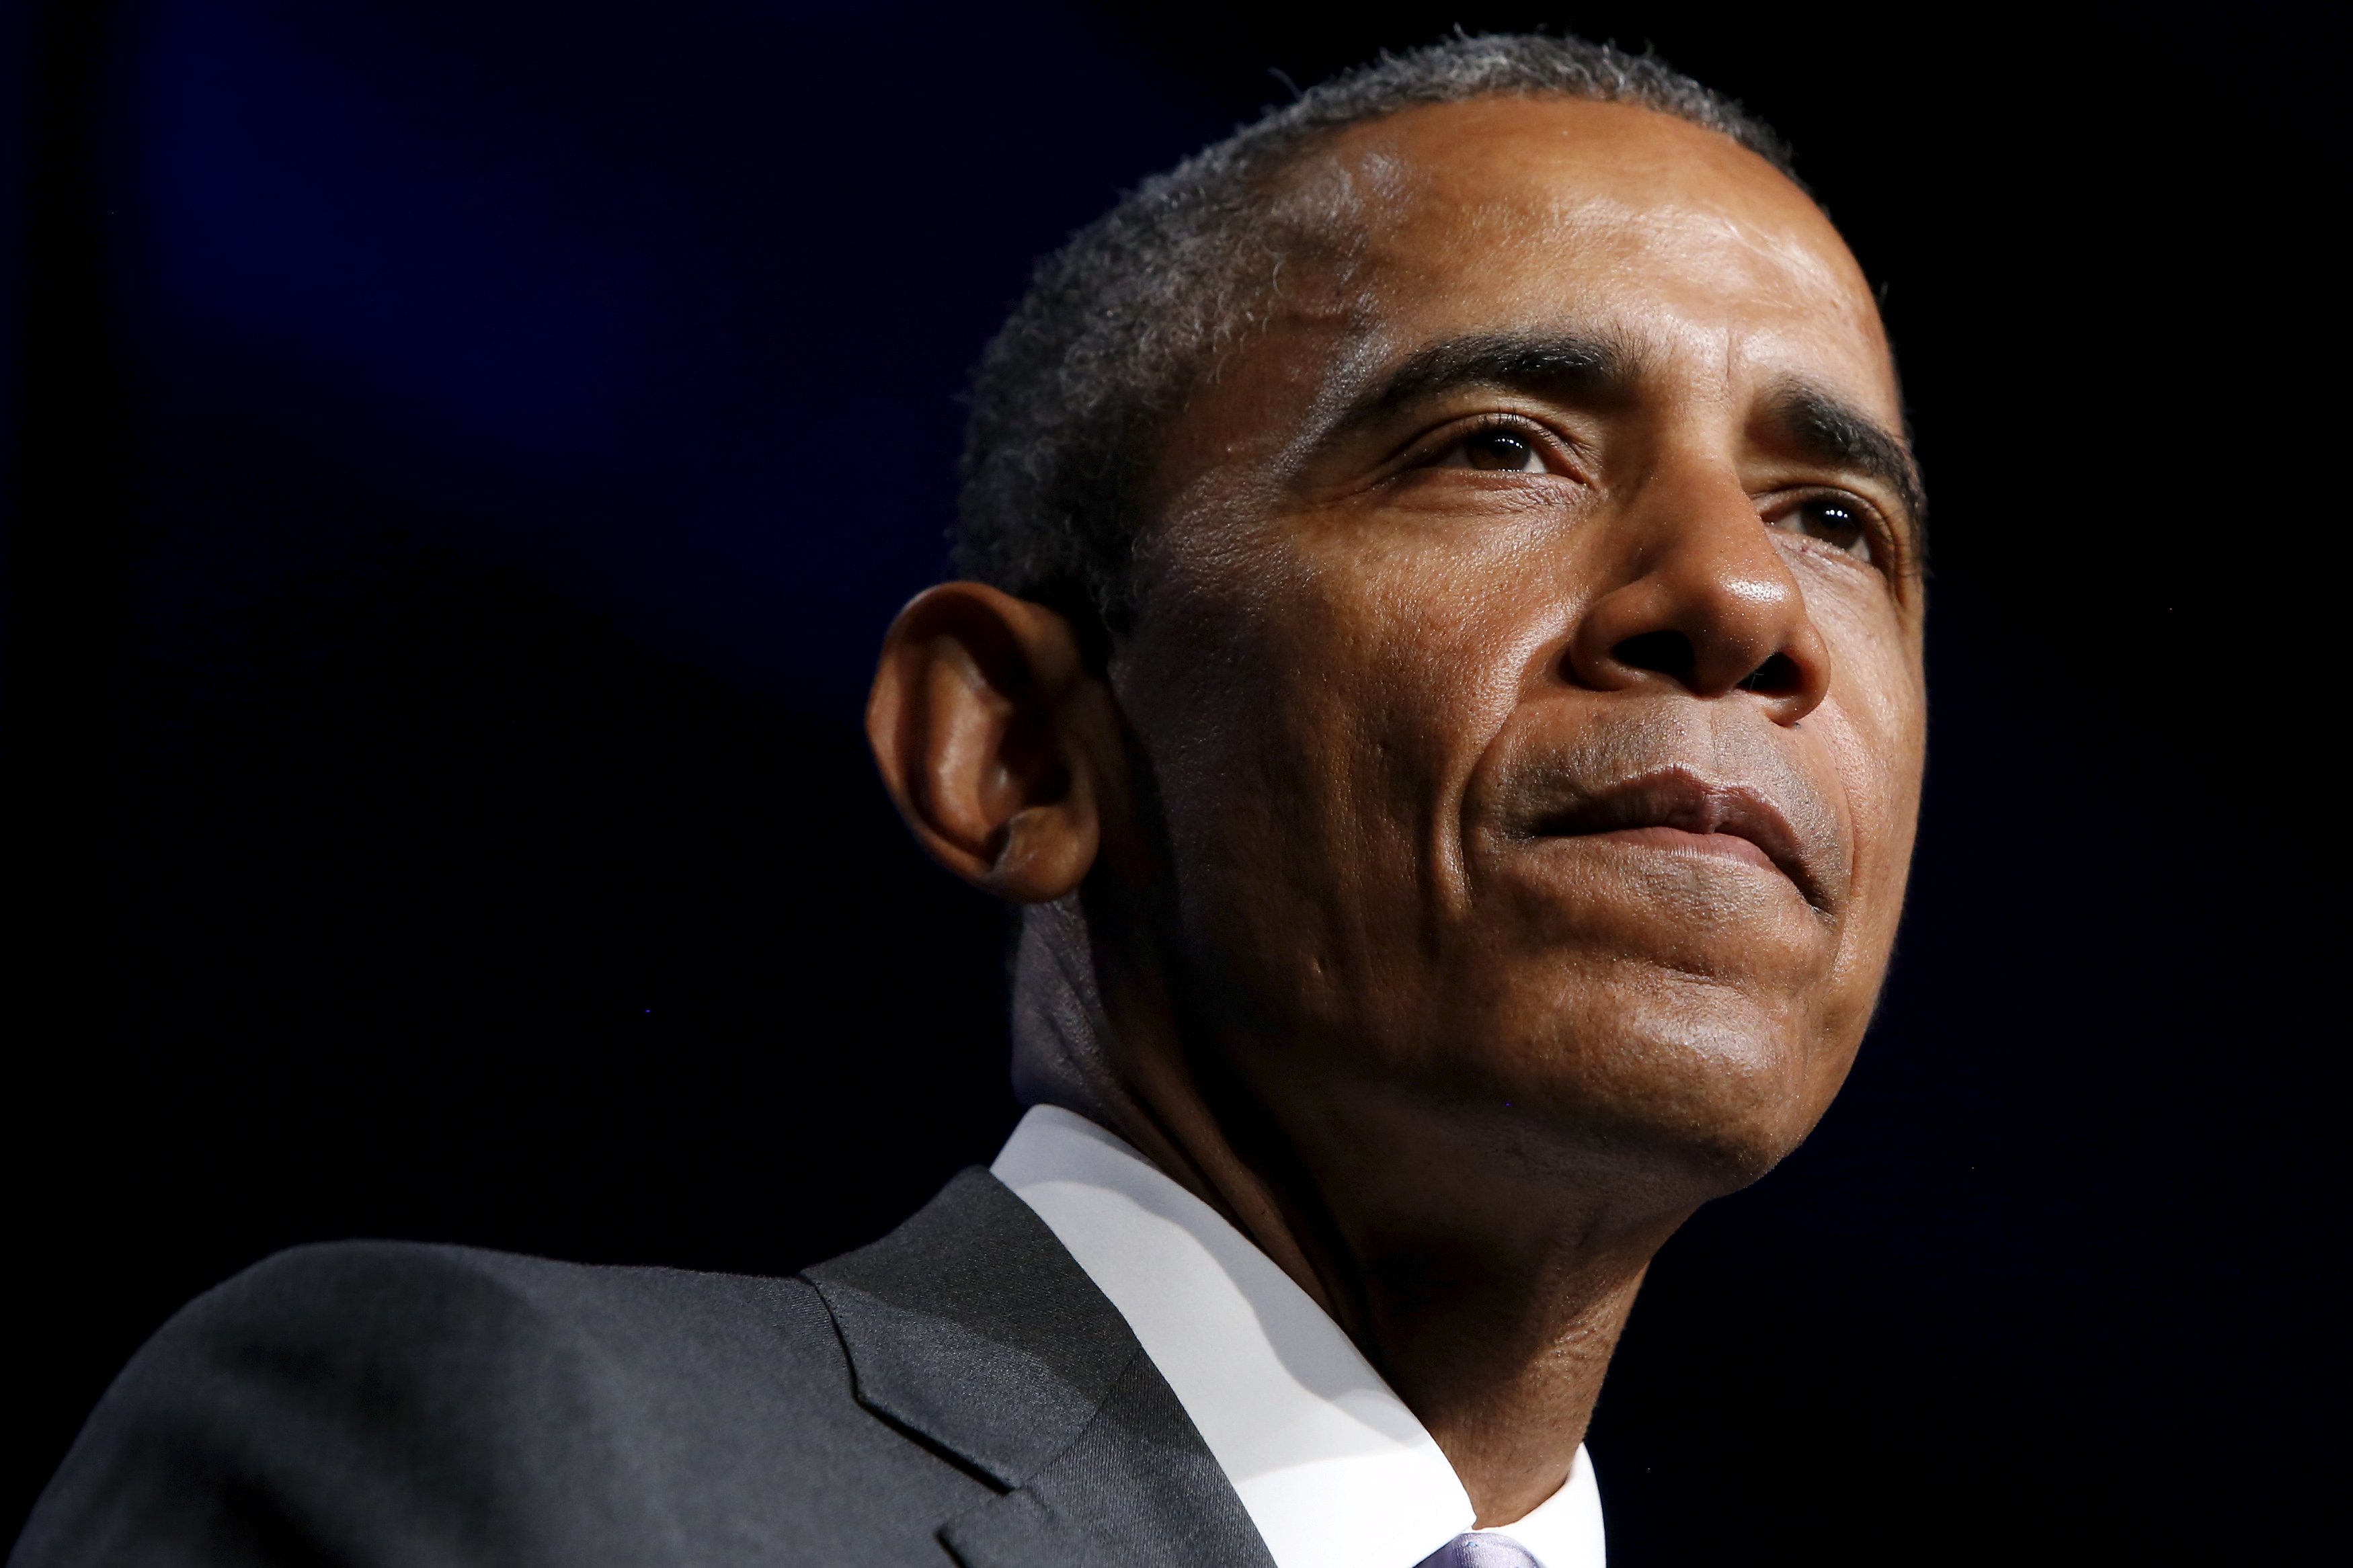 Obama expresa enorme tristeza e indignación por tiroteo en una iglesia